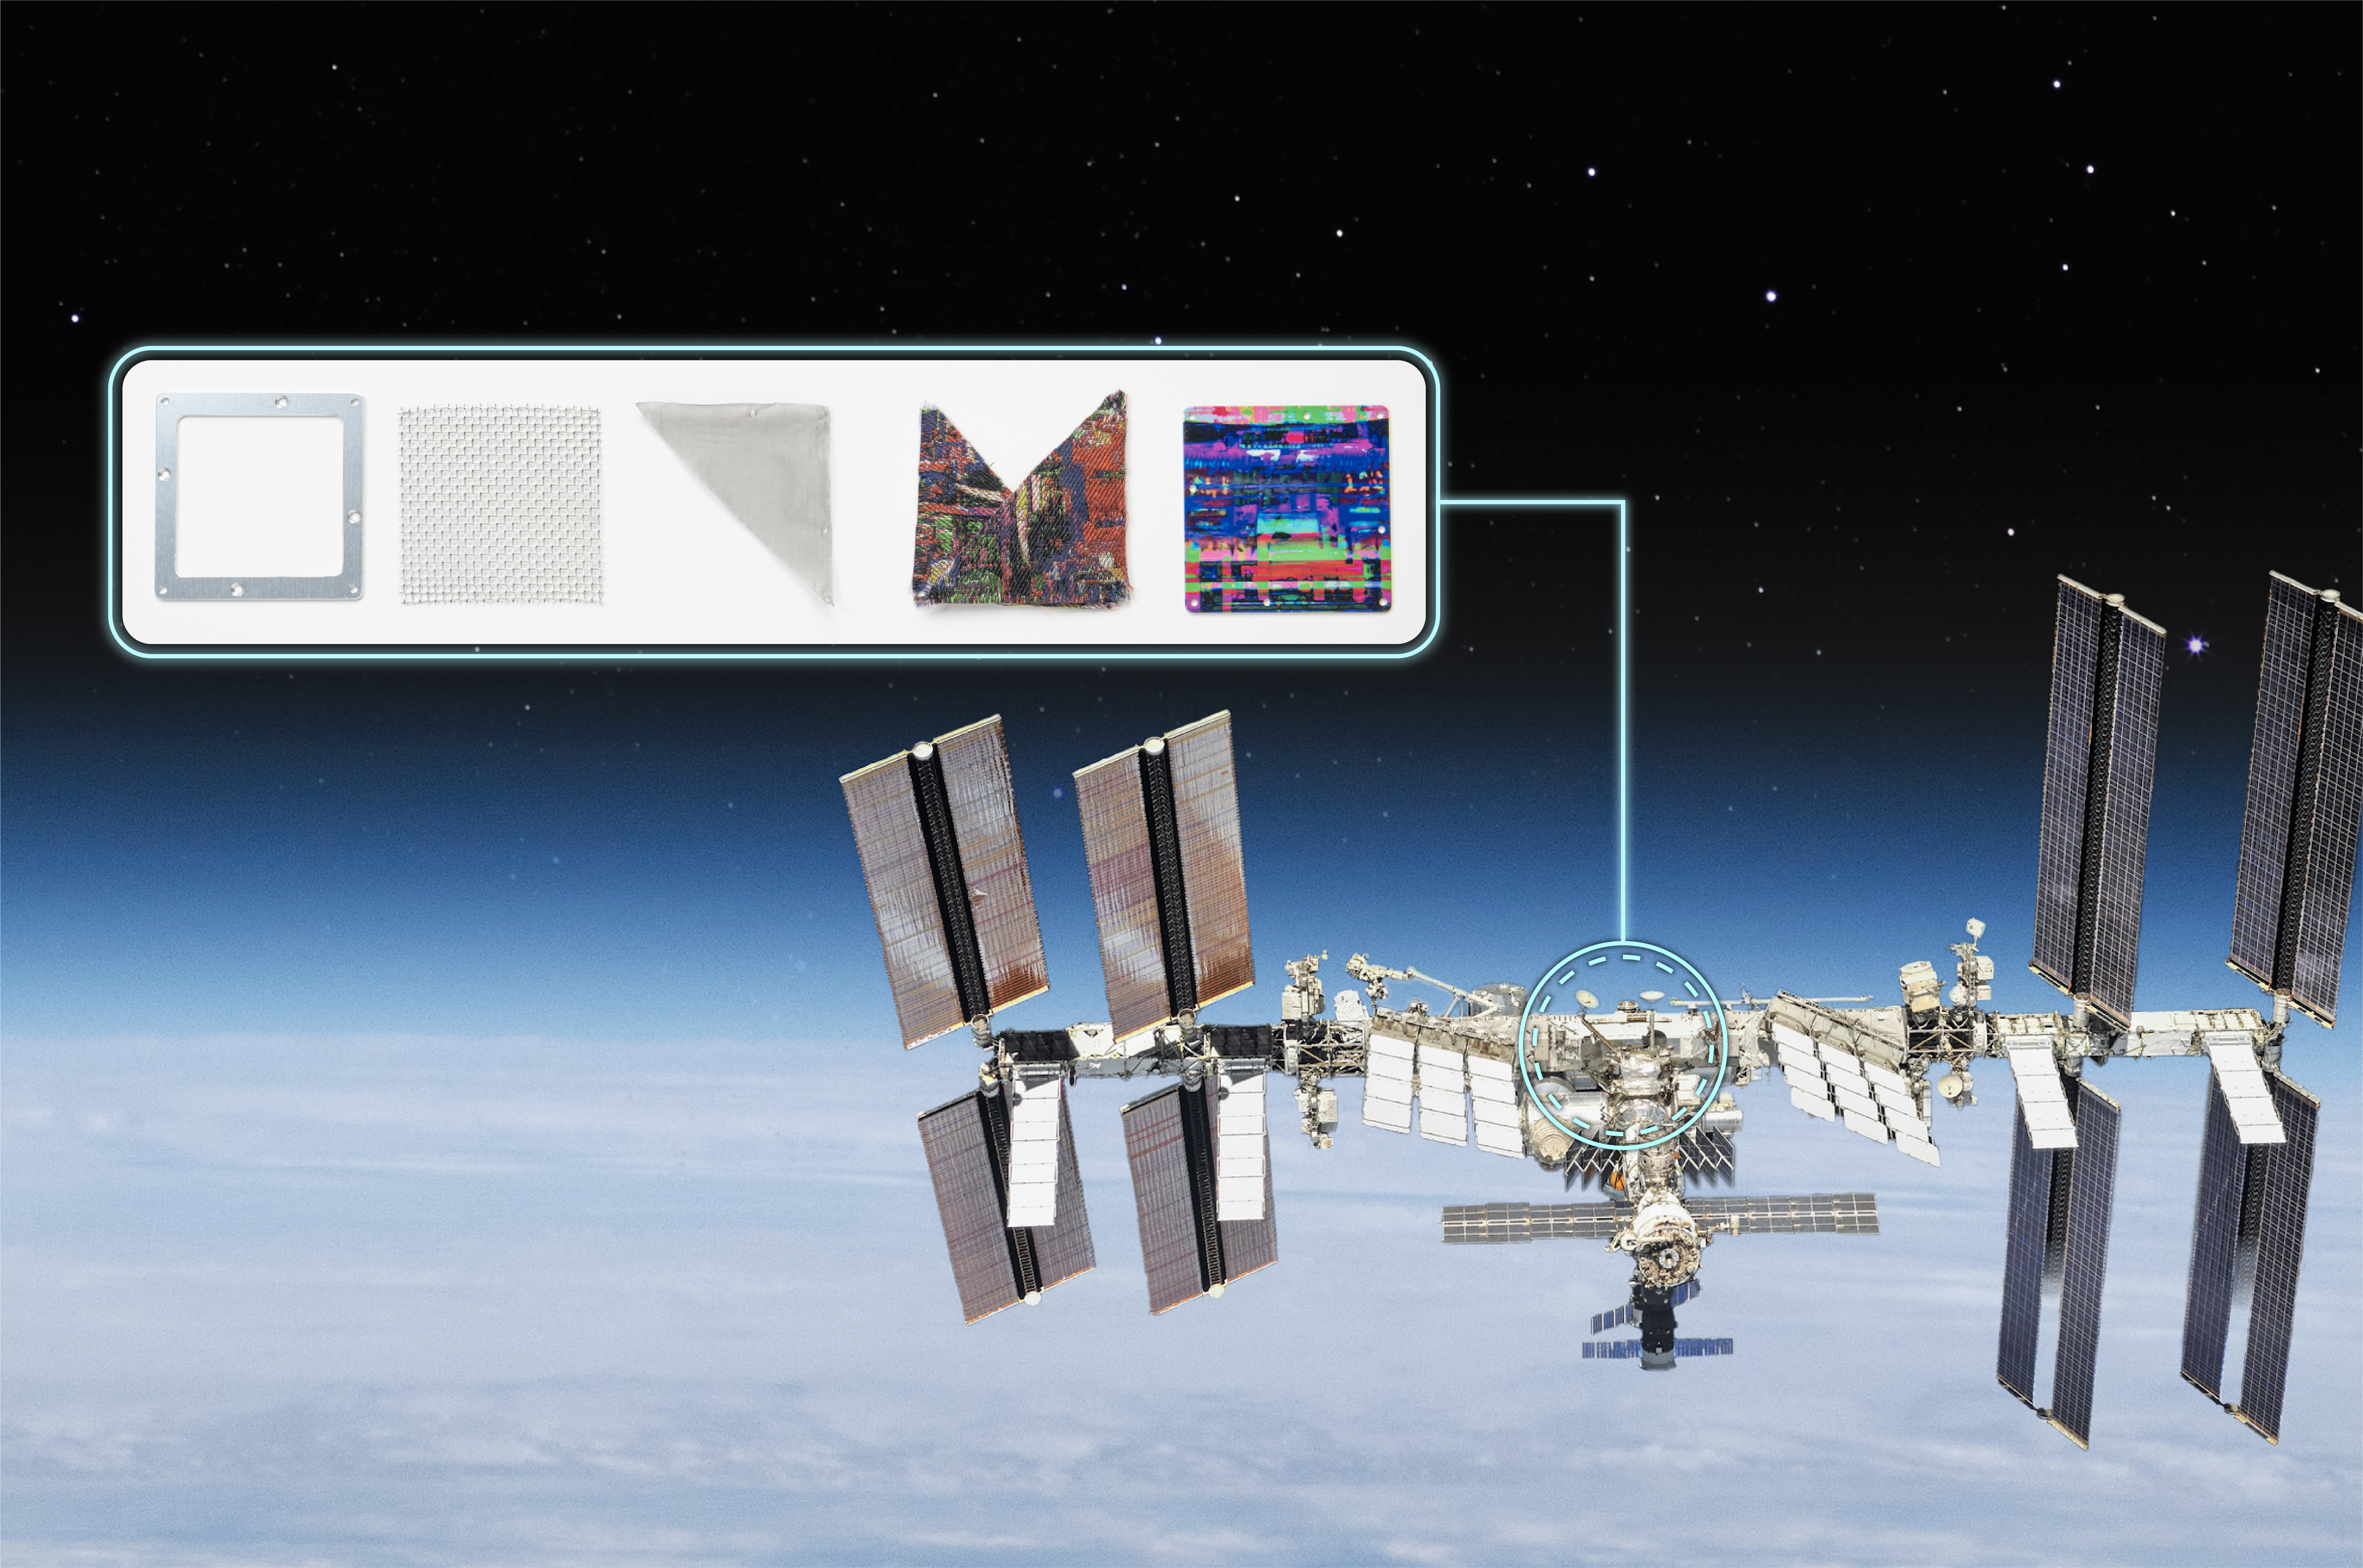 【今回打ち上げるアート作品（レイヤリングの様子）と国際宇宙ステーションに取り付けられる位置を示したイメージ図】